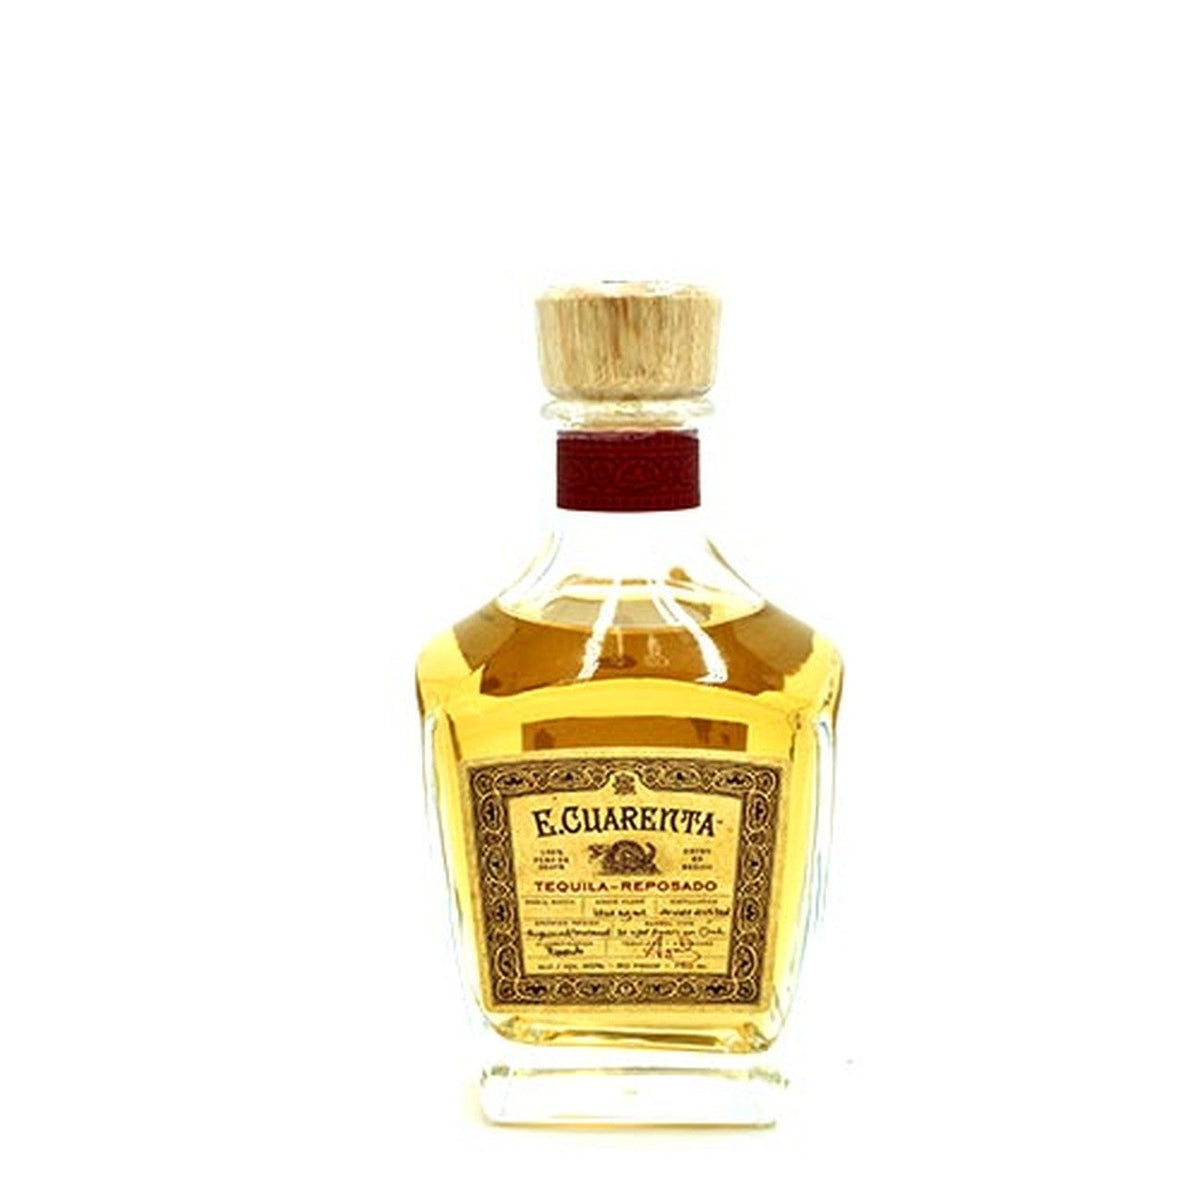 E. Cuarenta Tequila Reposado 750ml